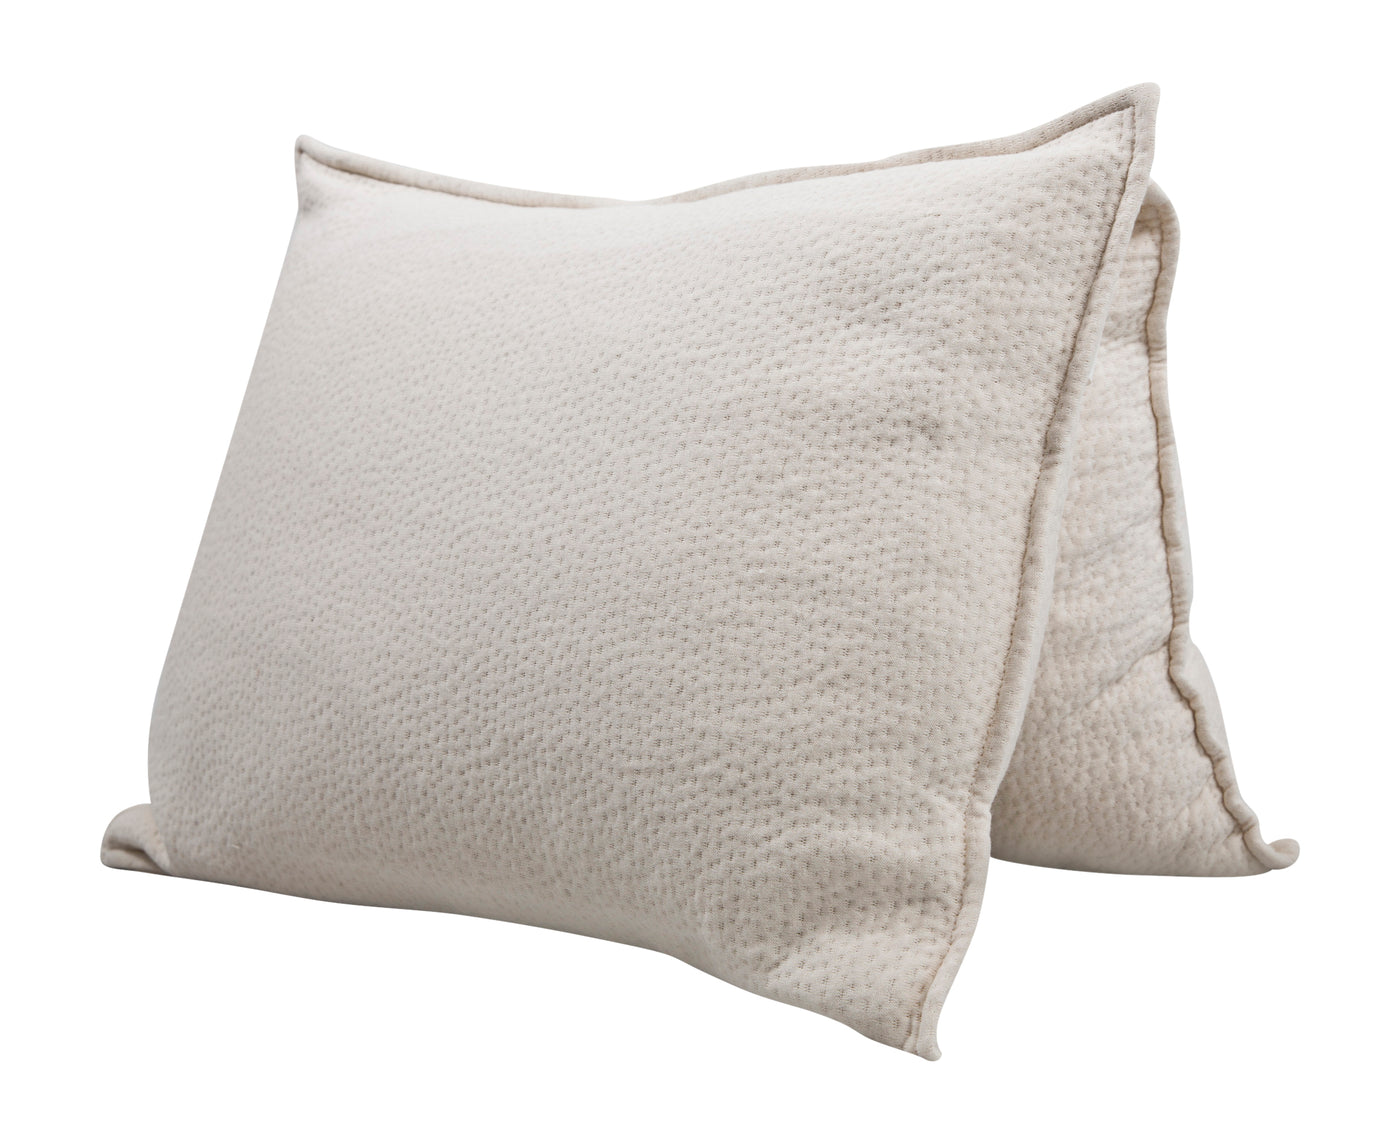 Toddler Pillow Organic Wool